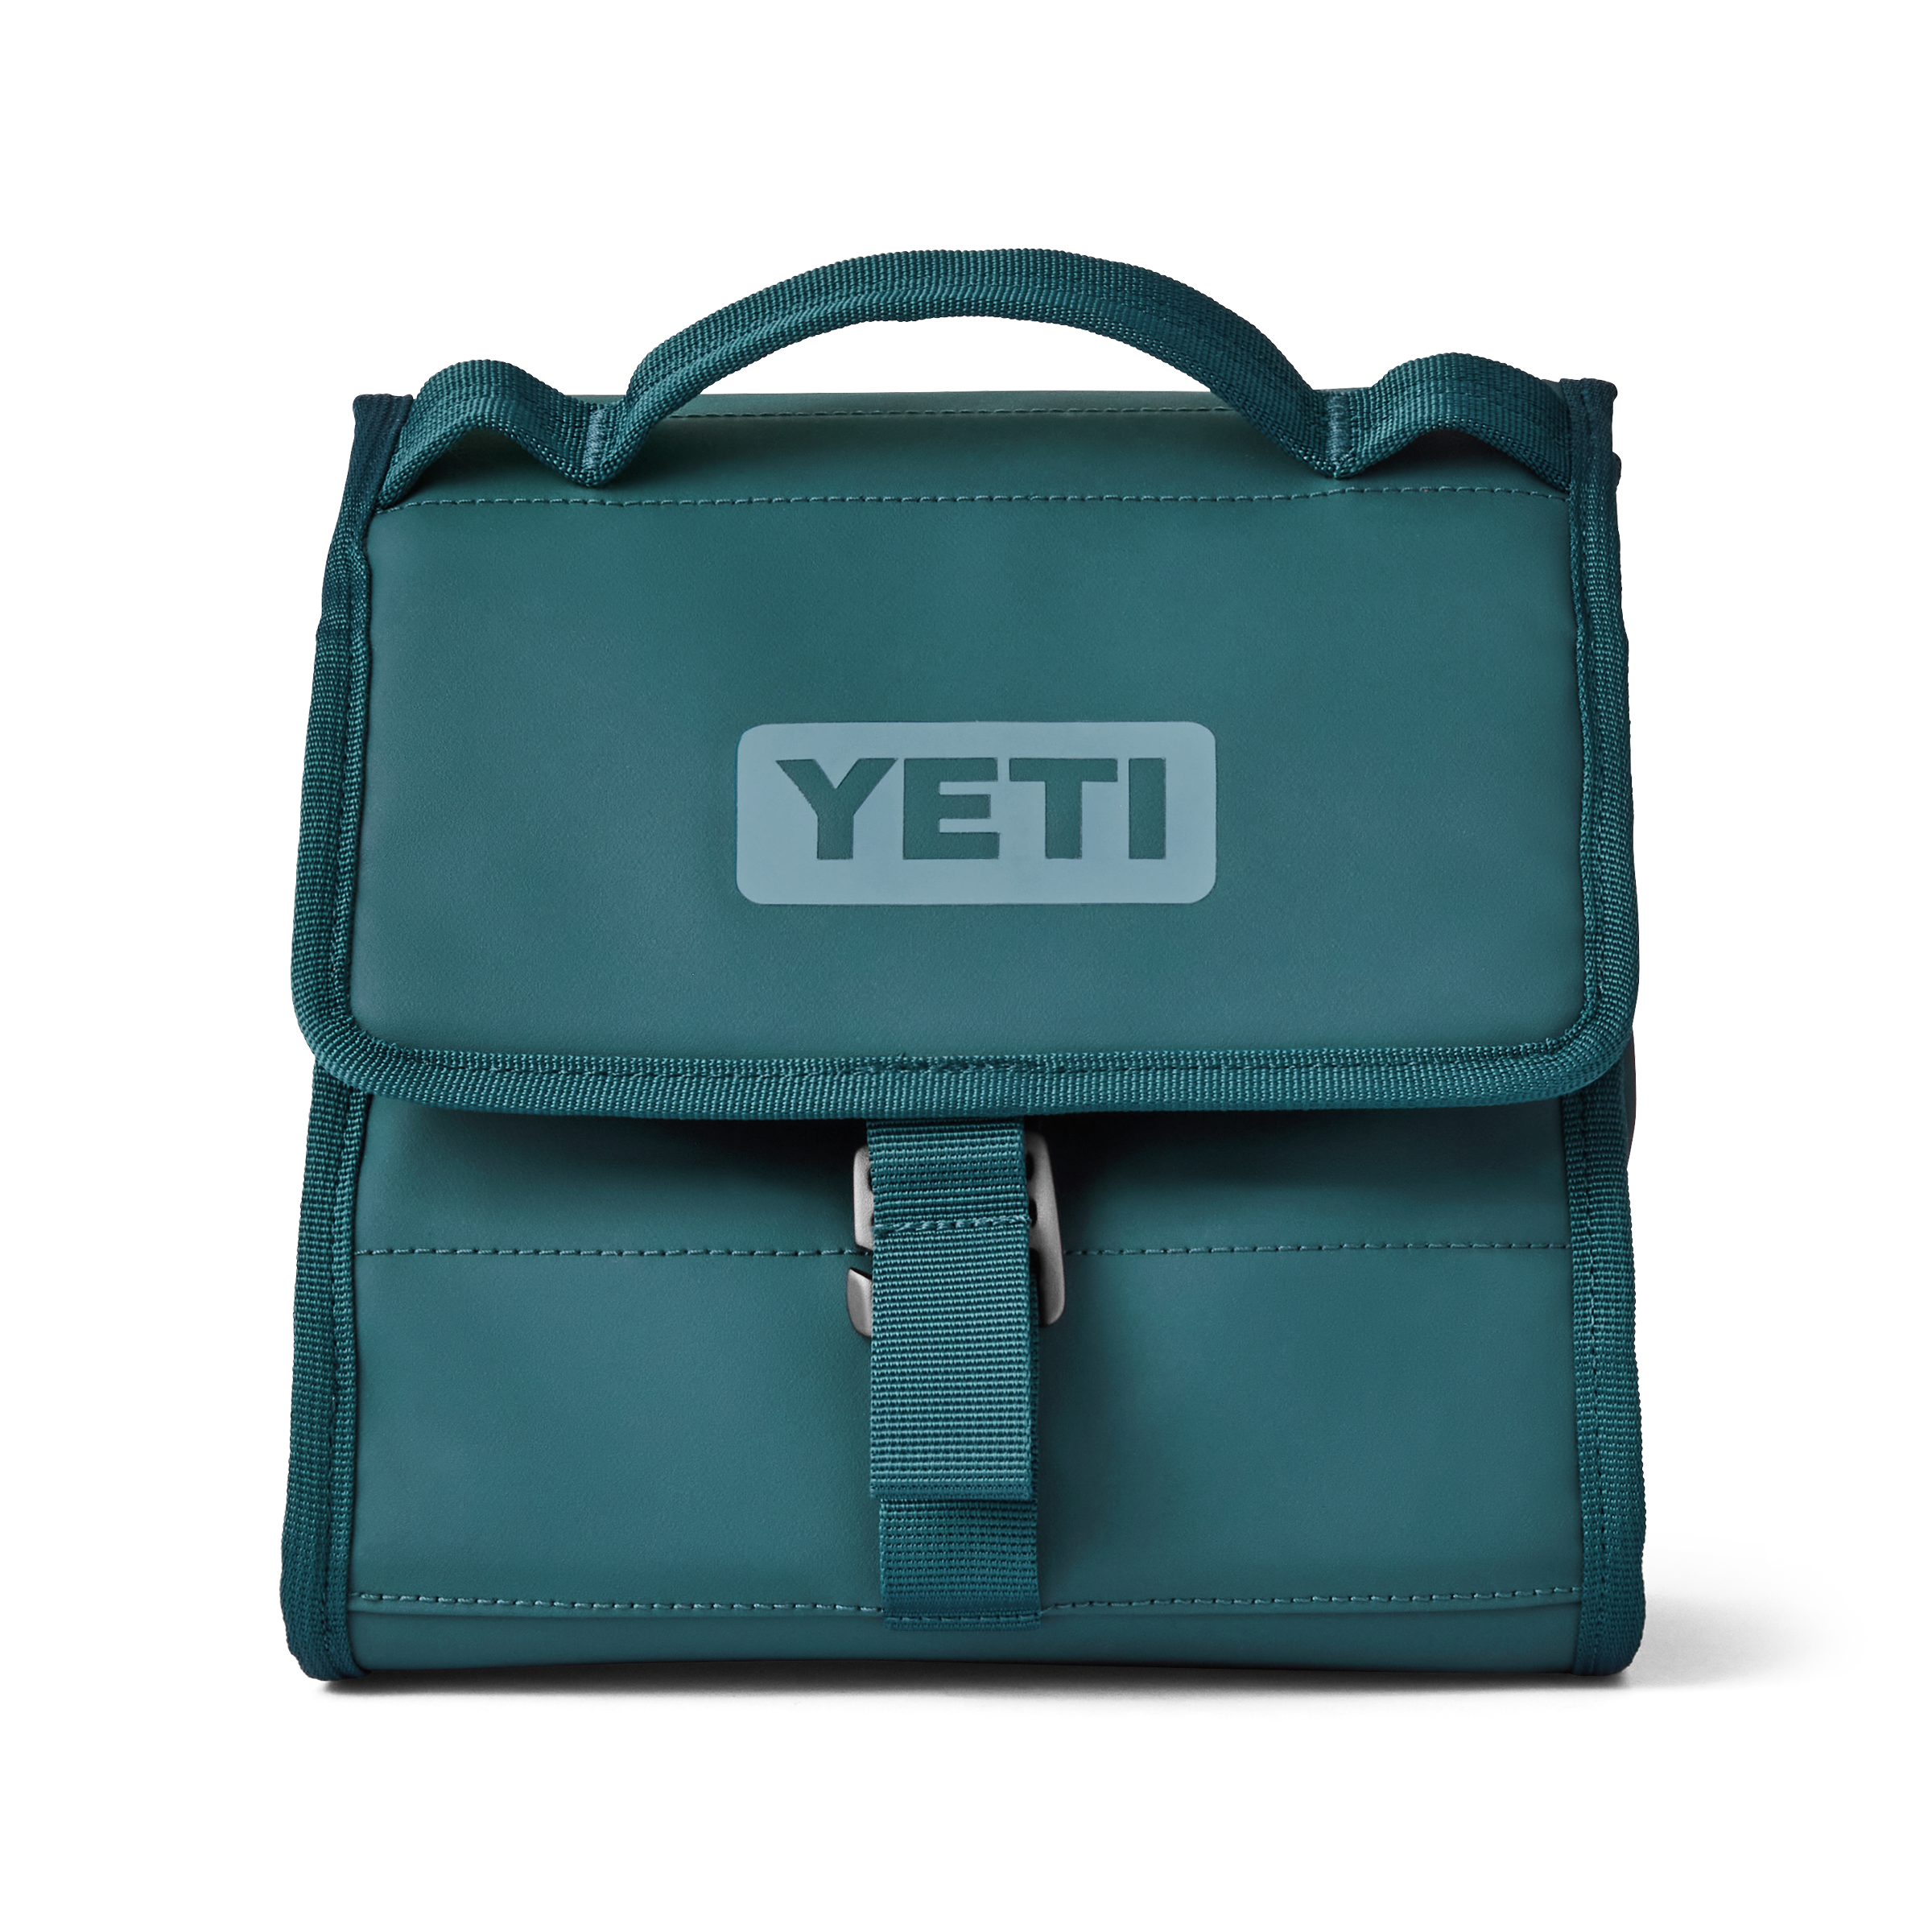 YETI DayTrip® Lunch Bag Agave Teal